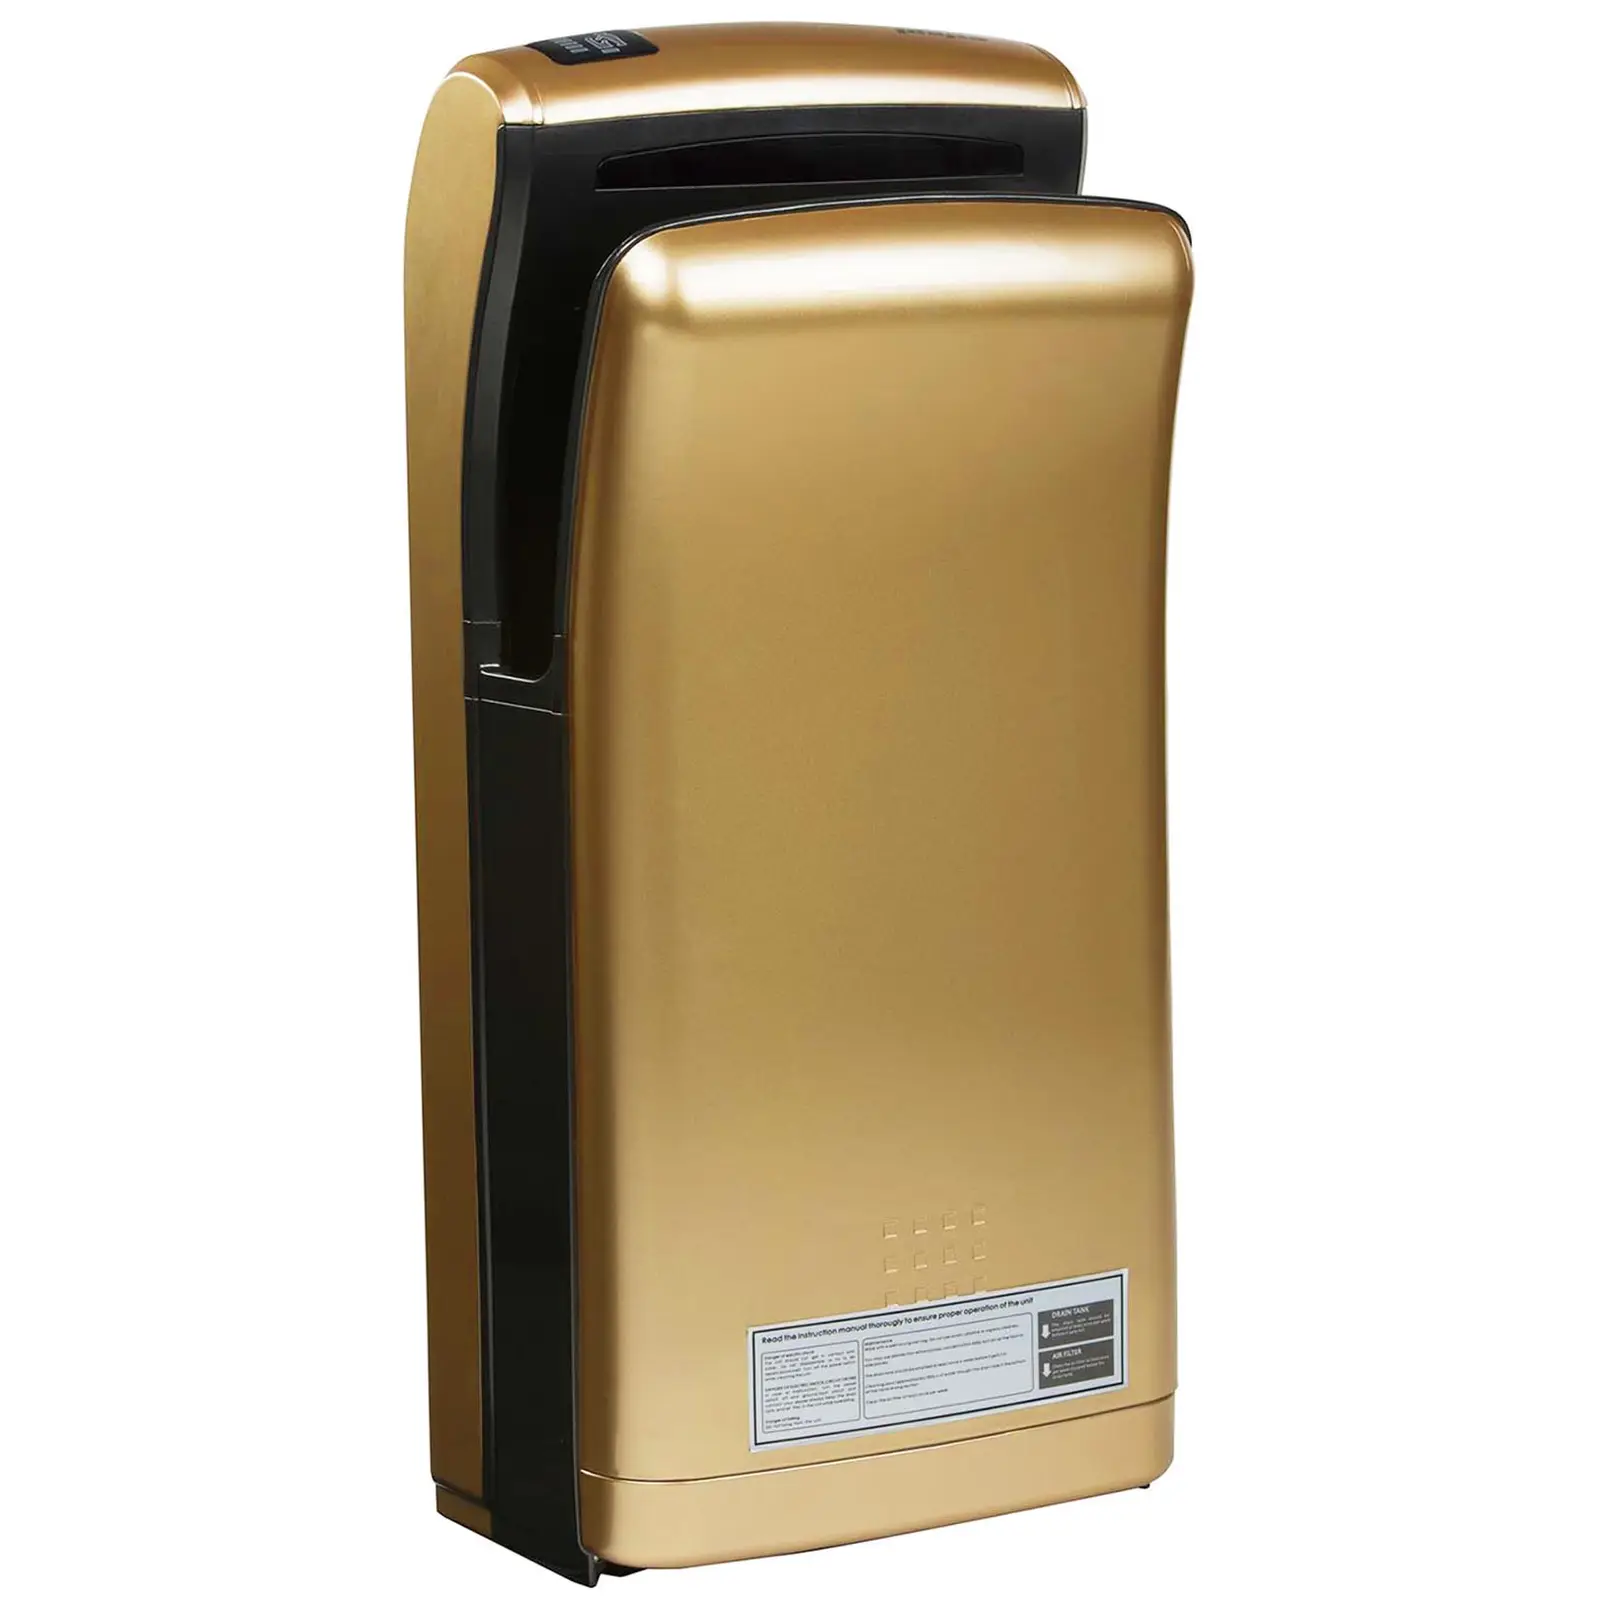 Hand Dryer - 1200 W - Gold